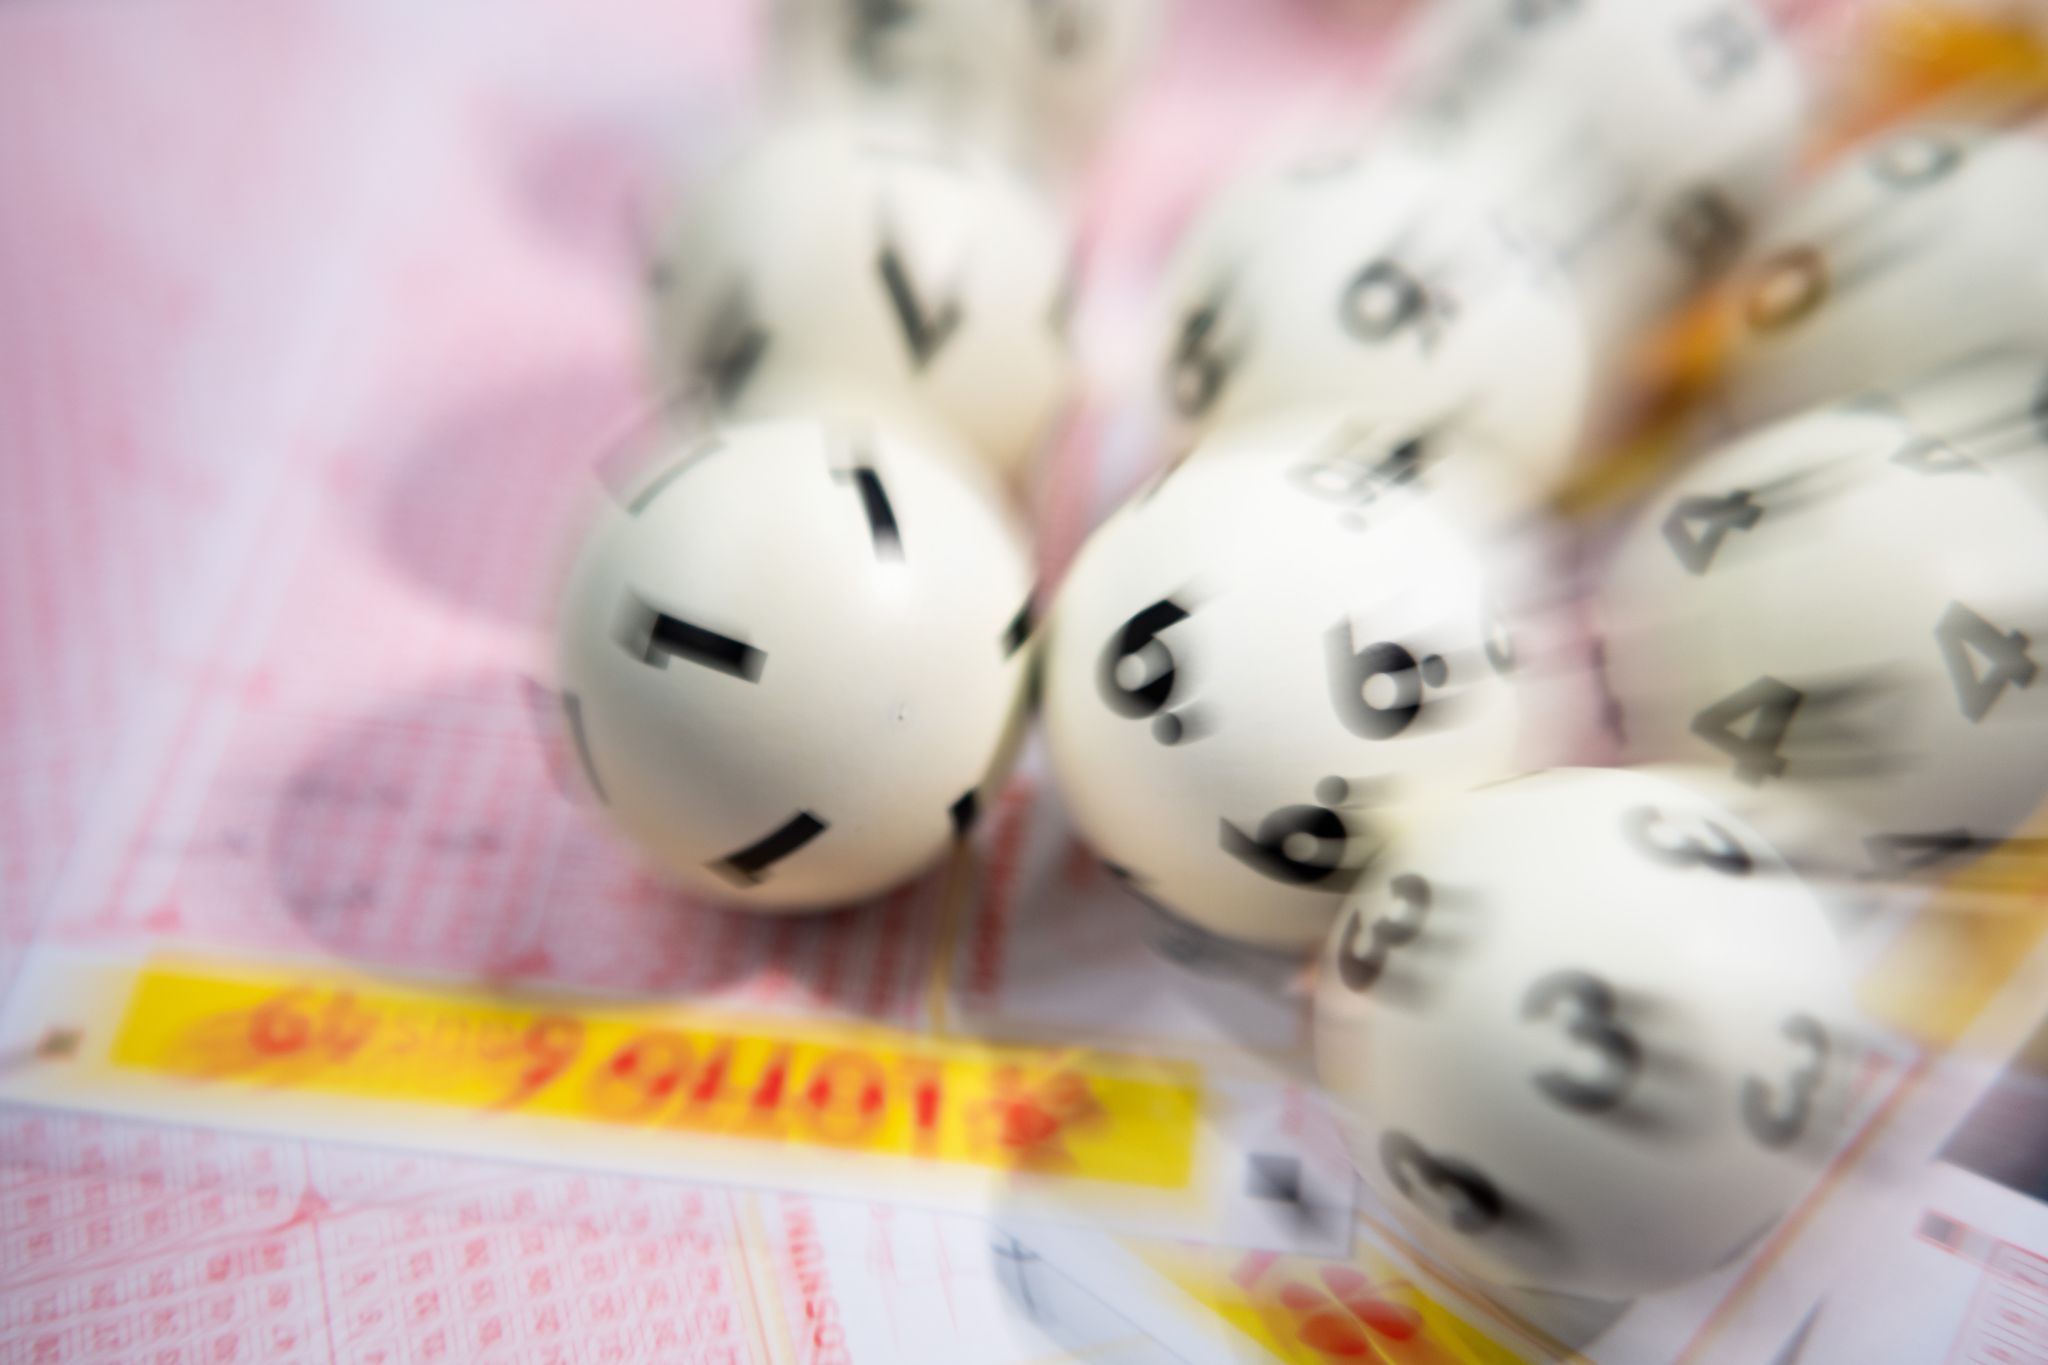 drei lottospieler aus bayern gewinnen millionen